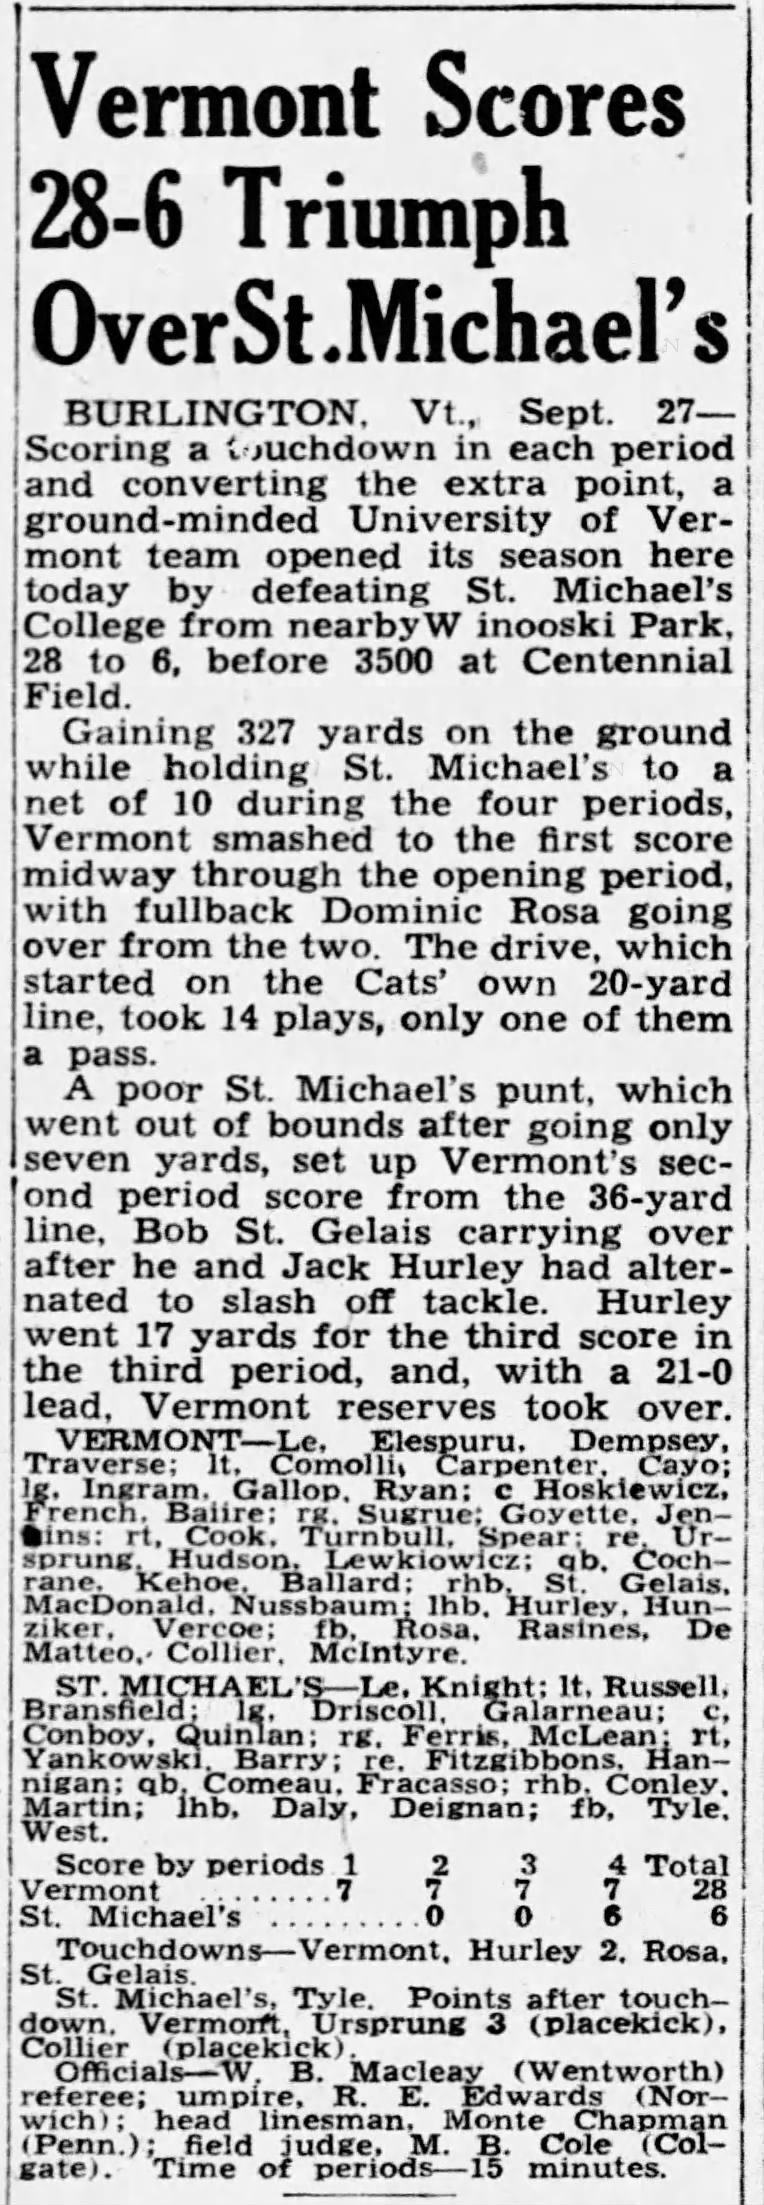 Vermont Scores 28-6 Triumph Over St. Michael's